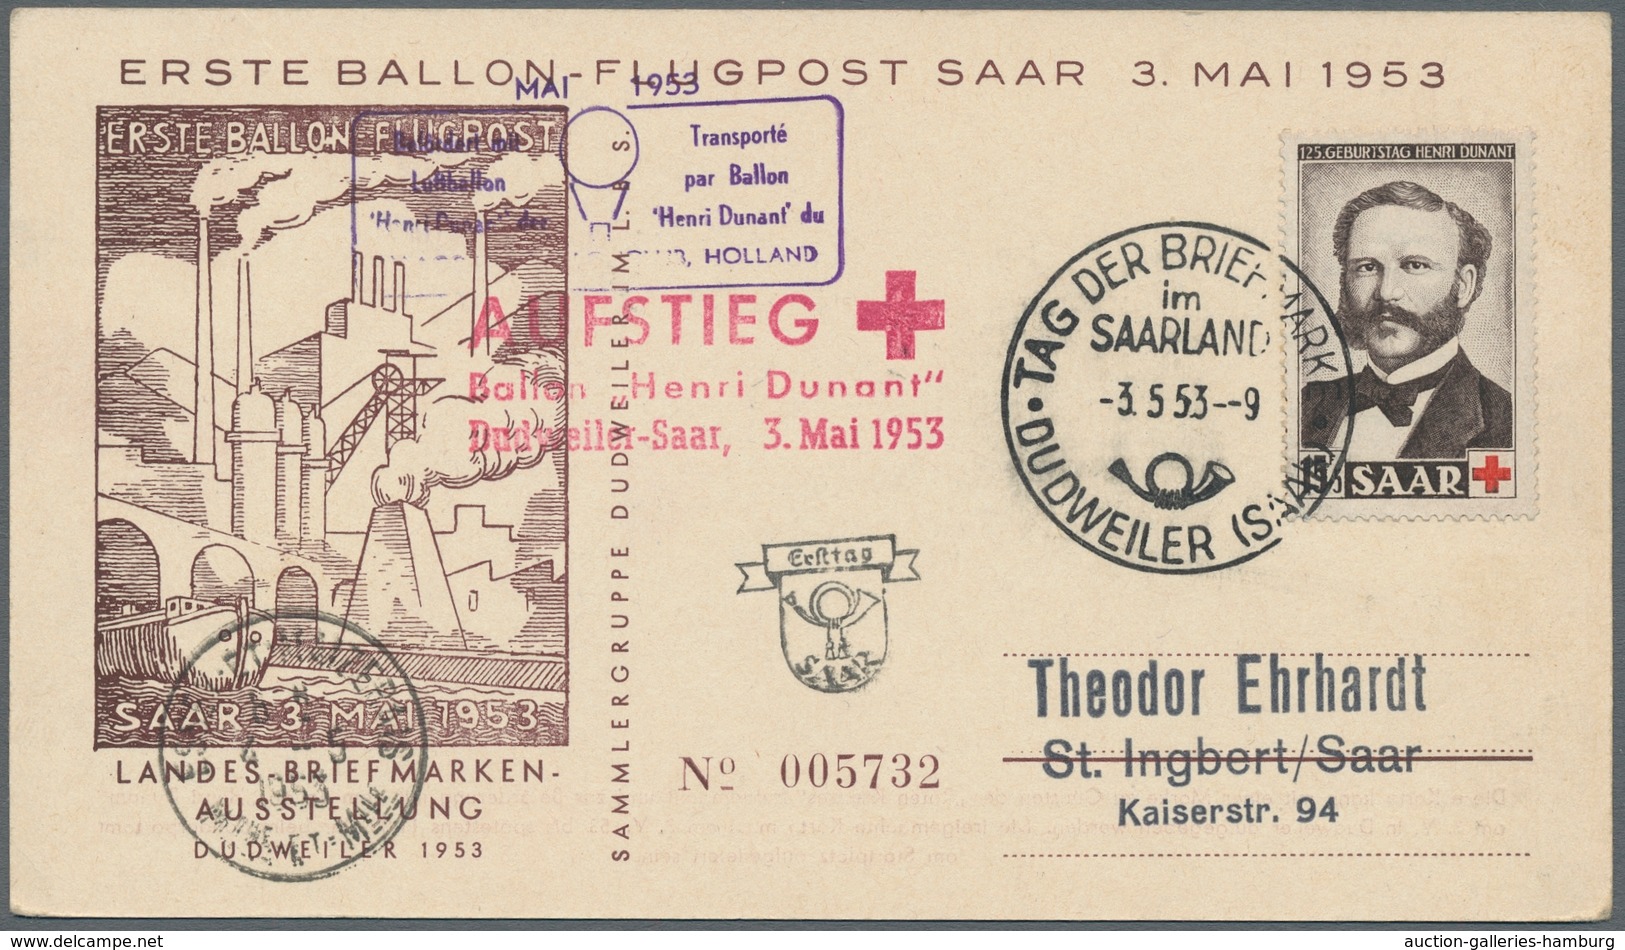 Saarland (1947/56): 1953, "Henri Dunant", sieben Ersttagskarten, alle per Ballonpost befördert, deko